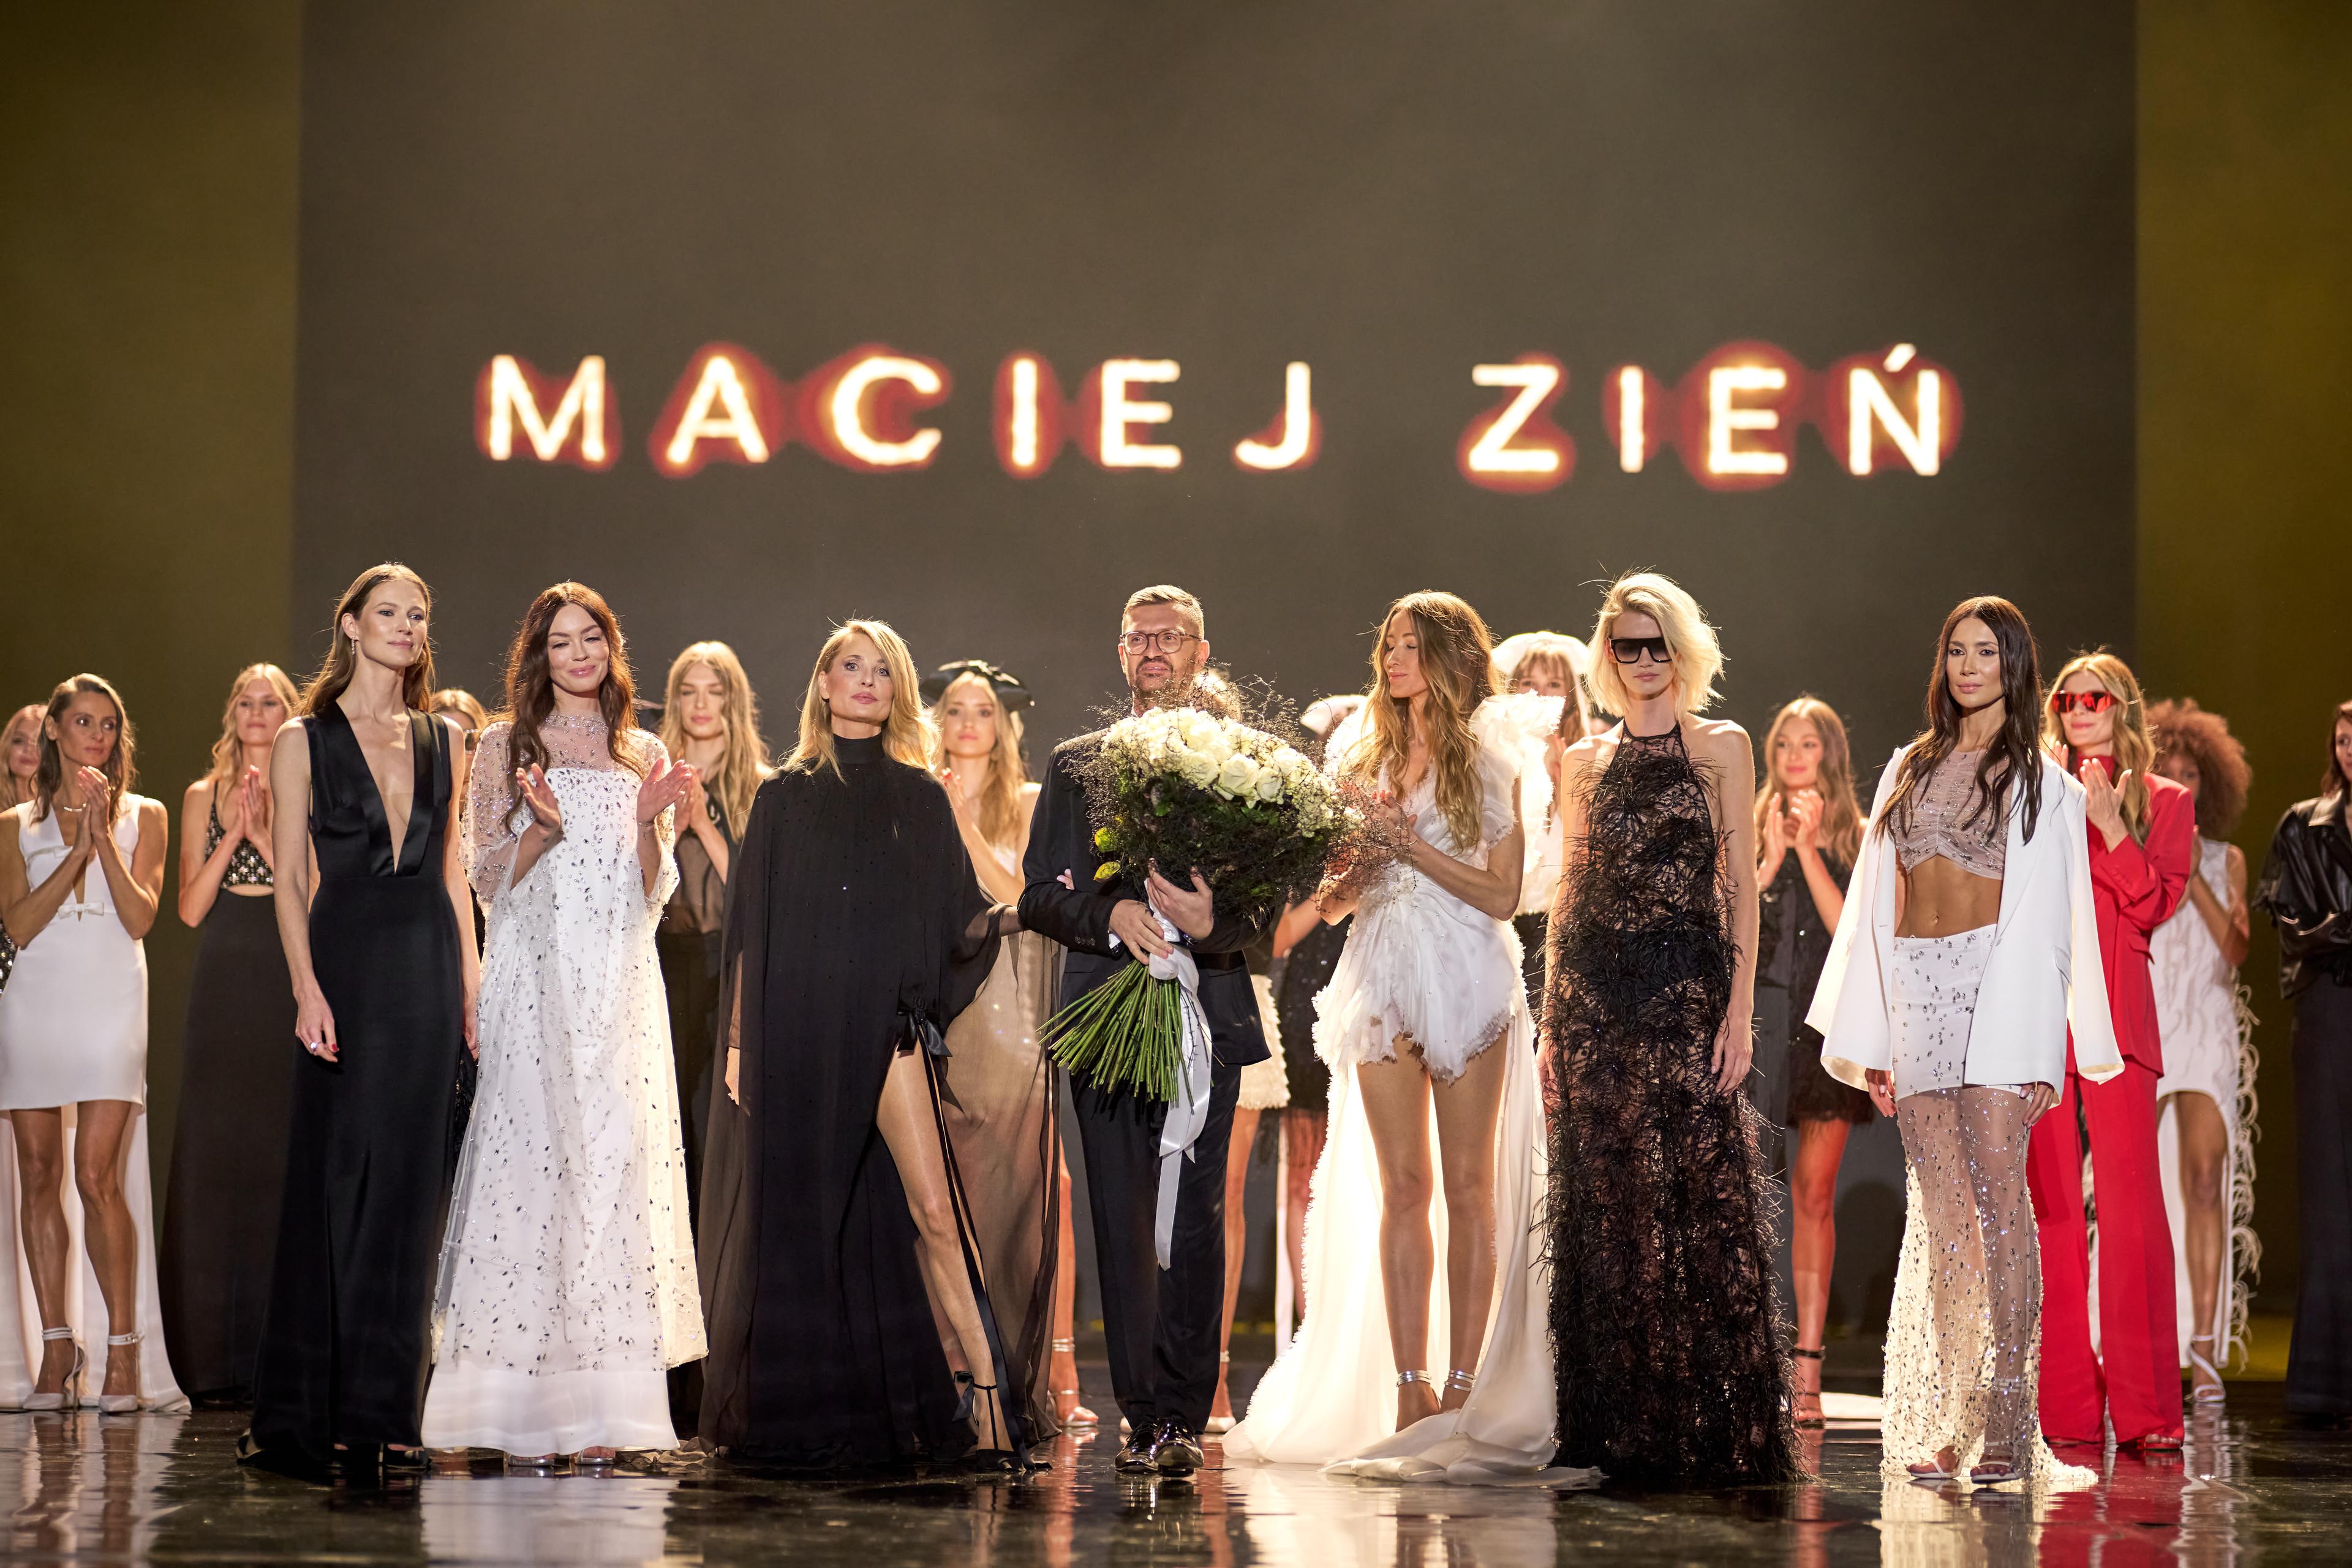 A symphony of femininity - Maciej Zień celebrates the 25th anniversary of his brand